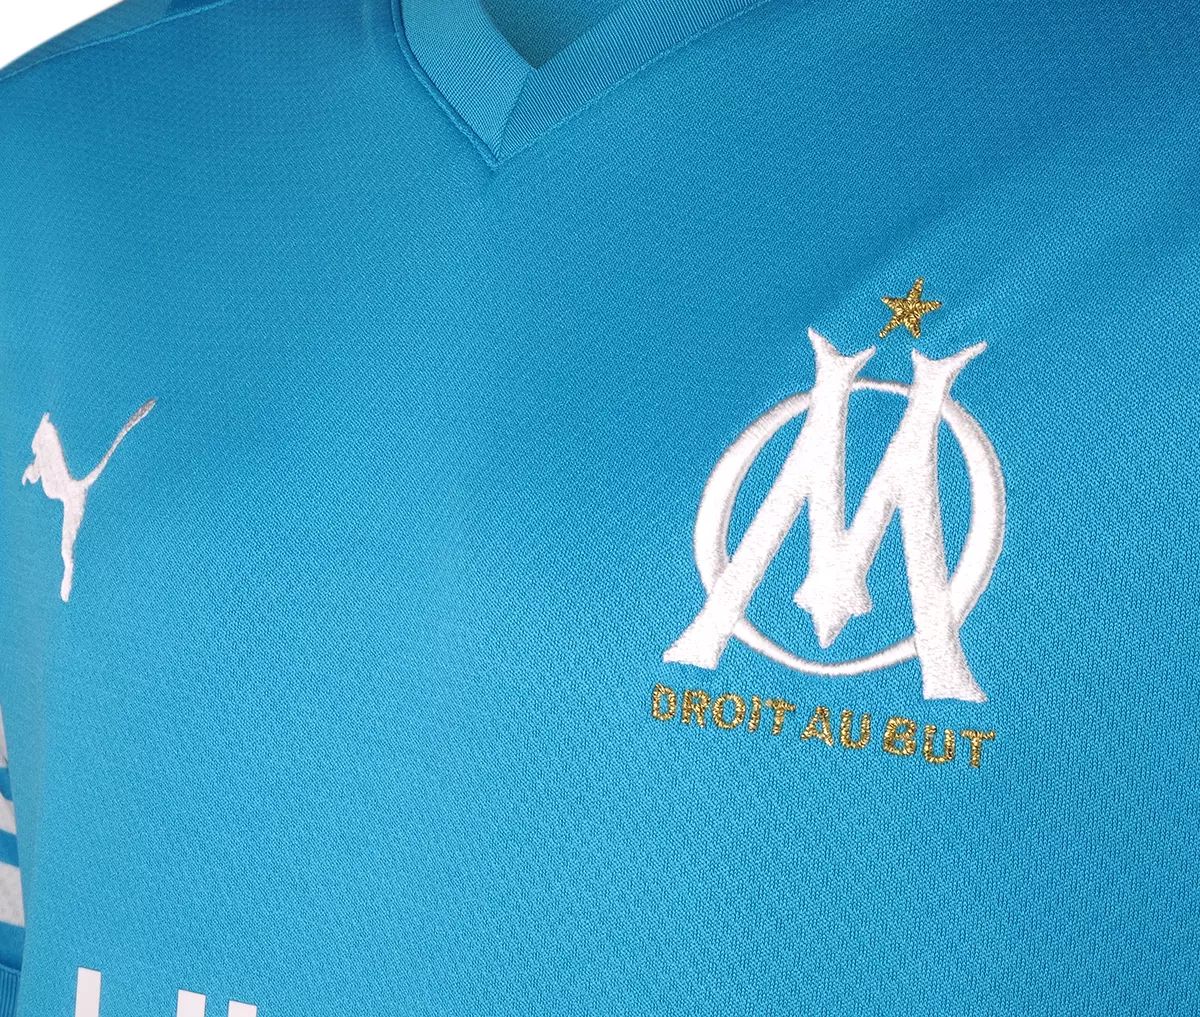 PUMA Football x Olympique de Marseille - Maillot collector "OM Made"